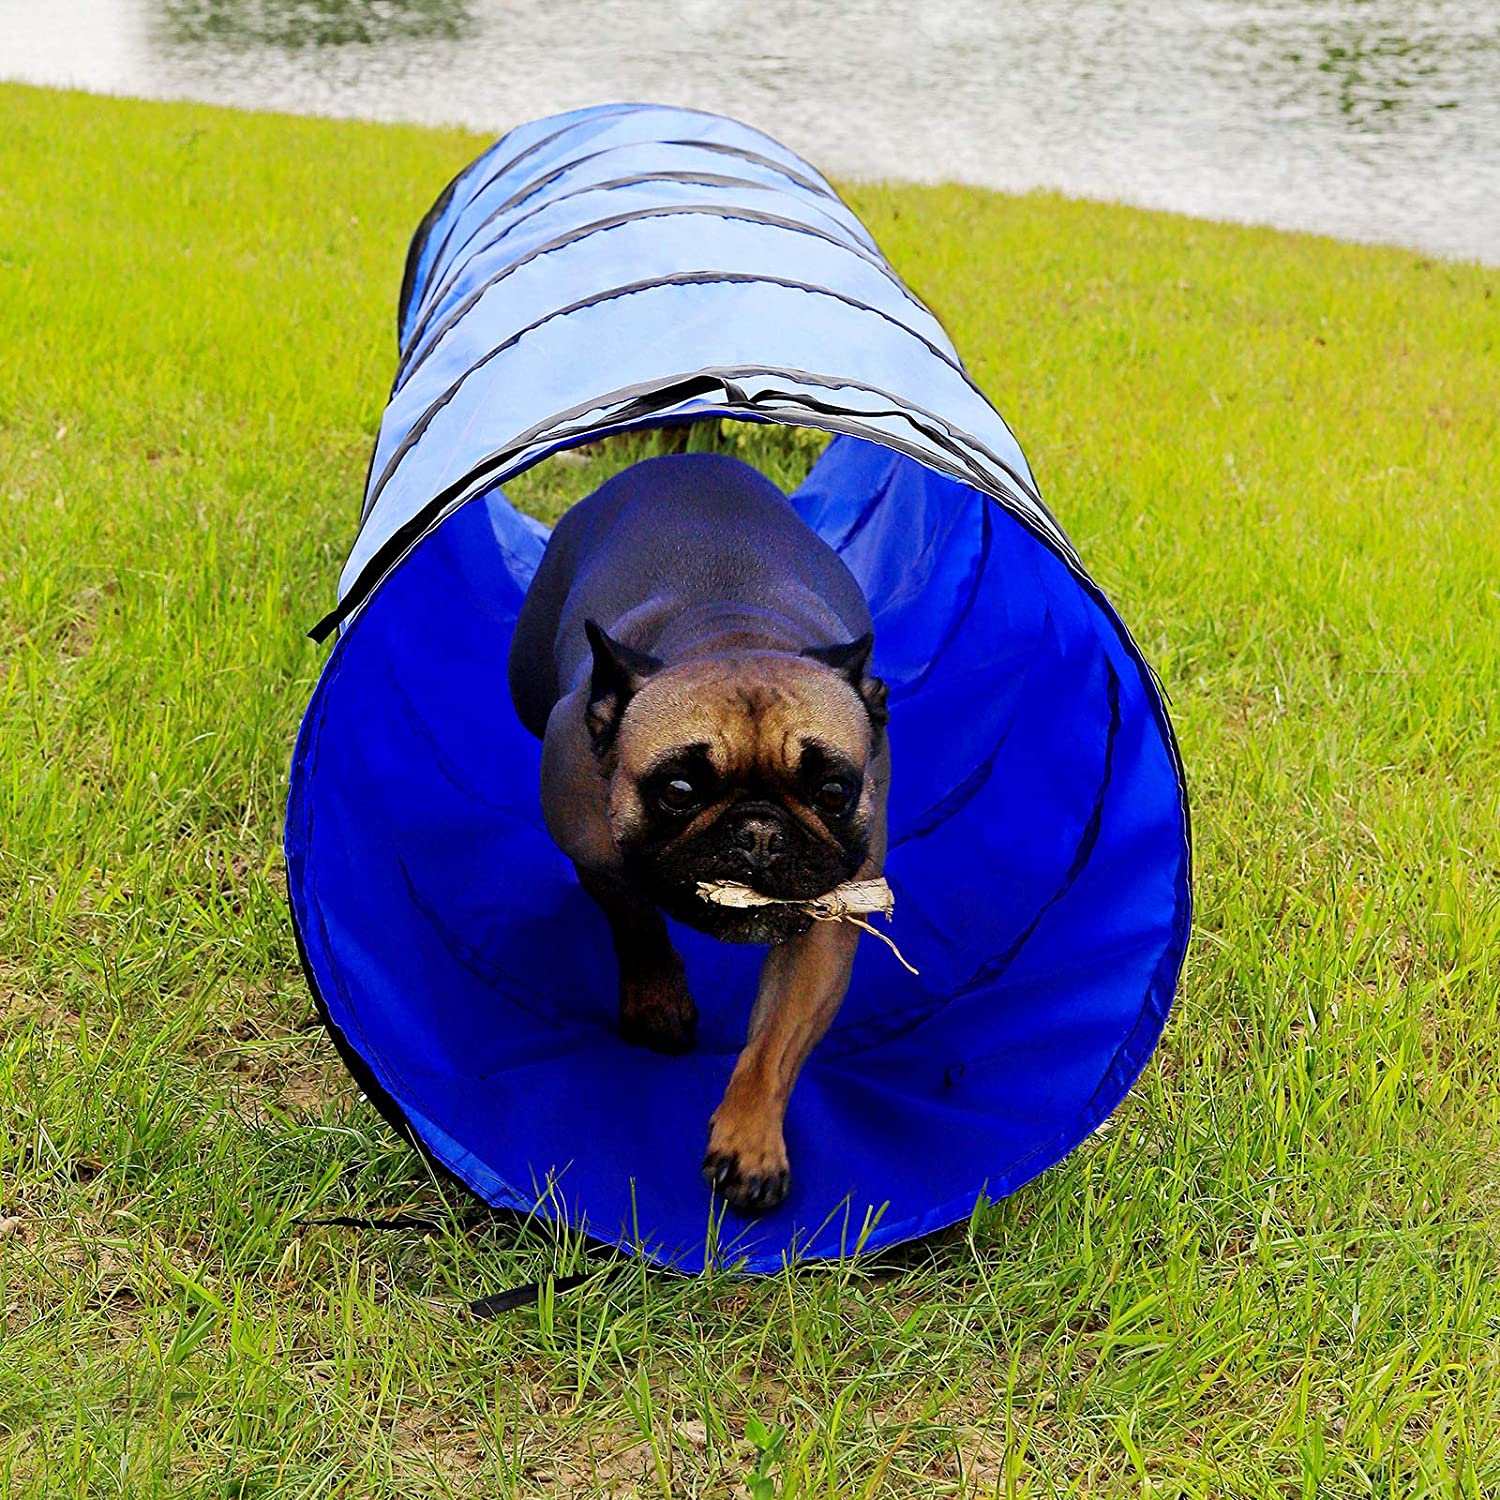  Dibea Perros, túnel de Agilidad para Mascotas, 200 x 40 cm (S), Color Azul 